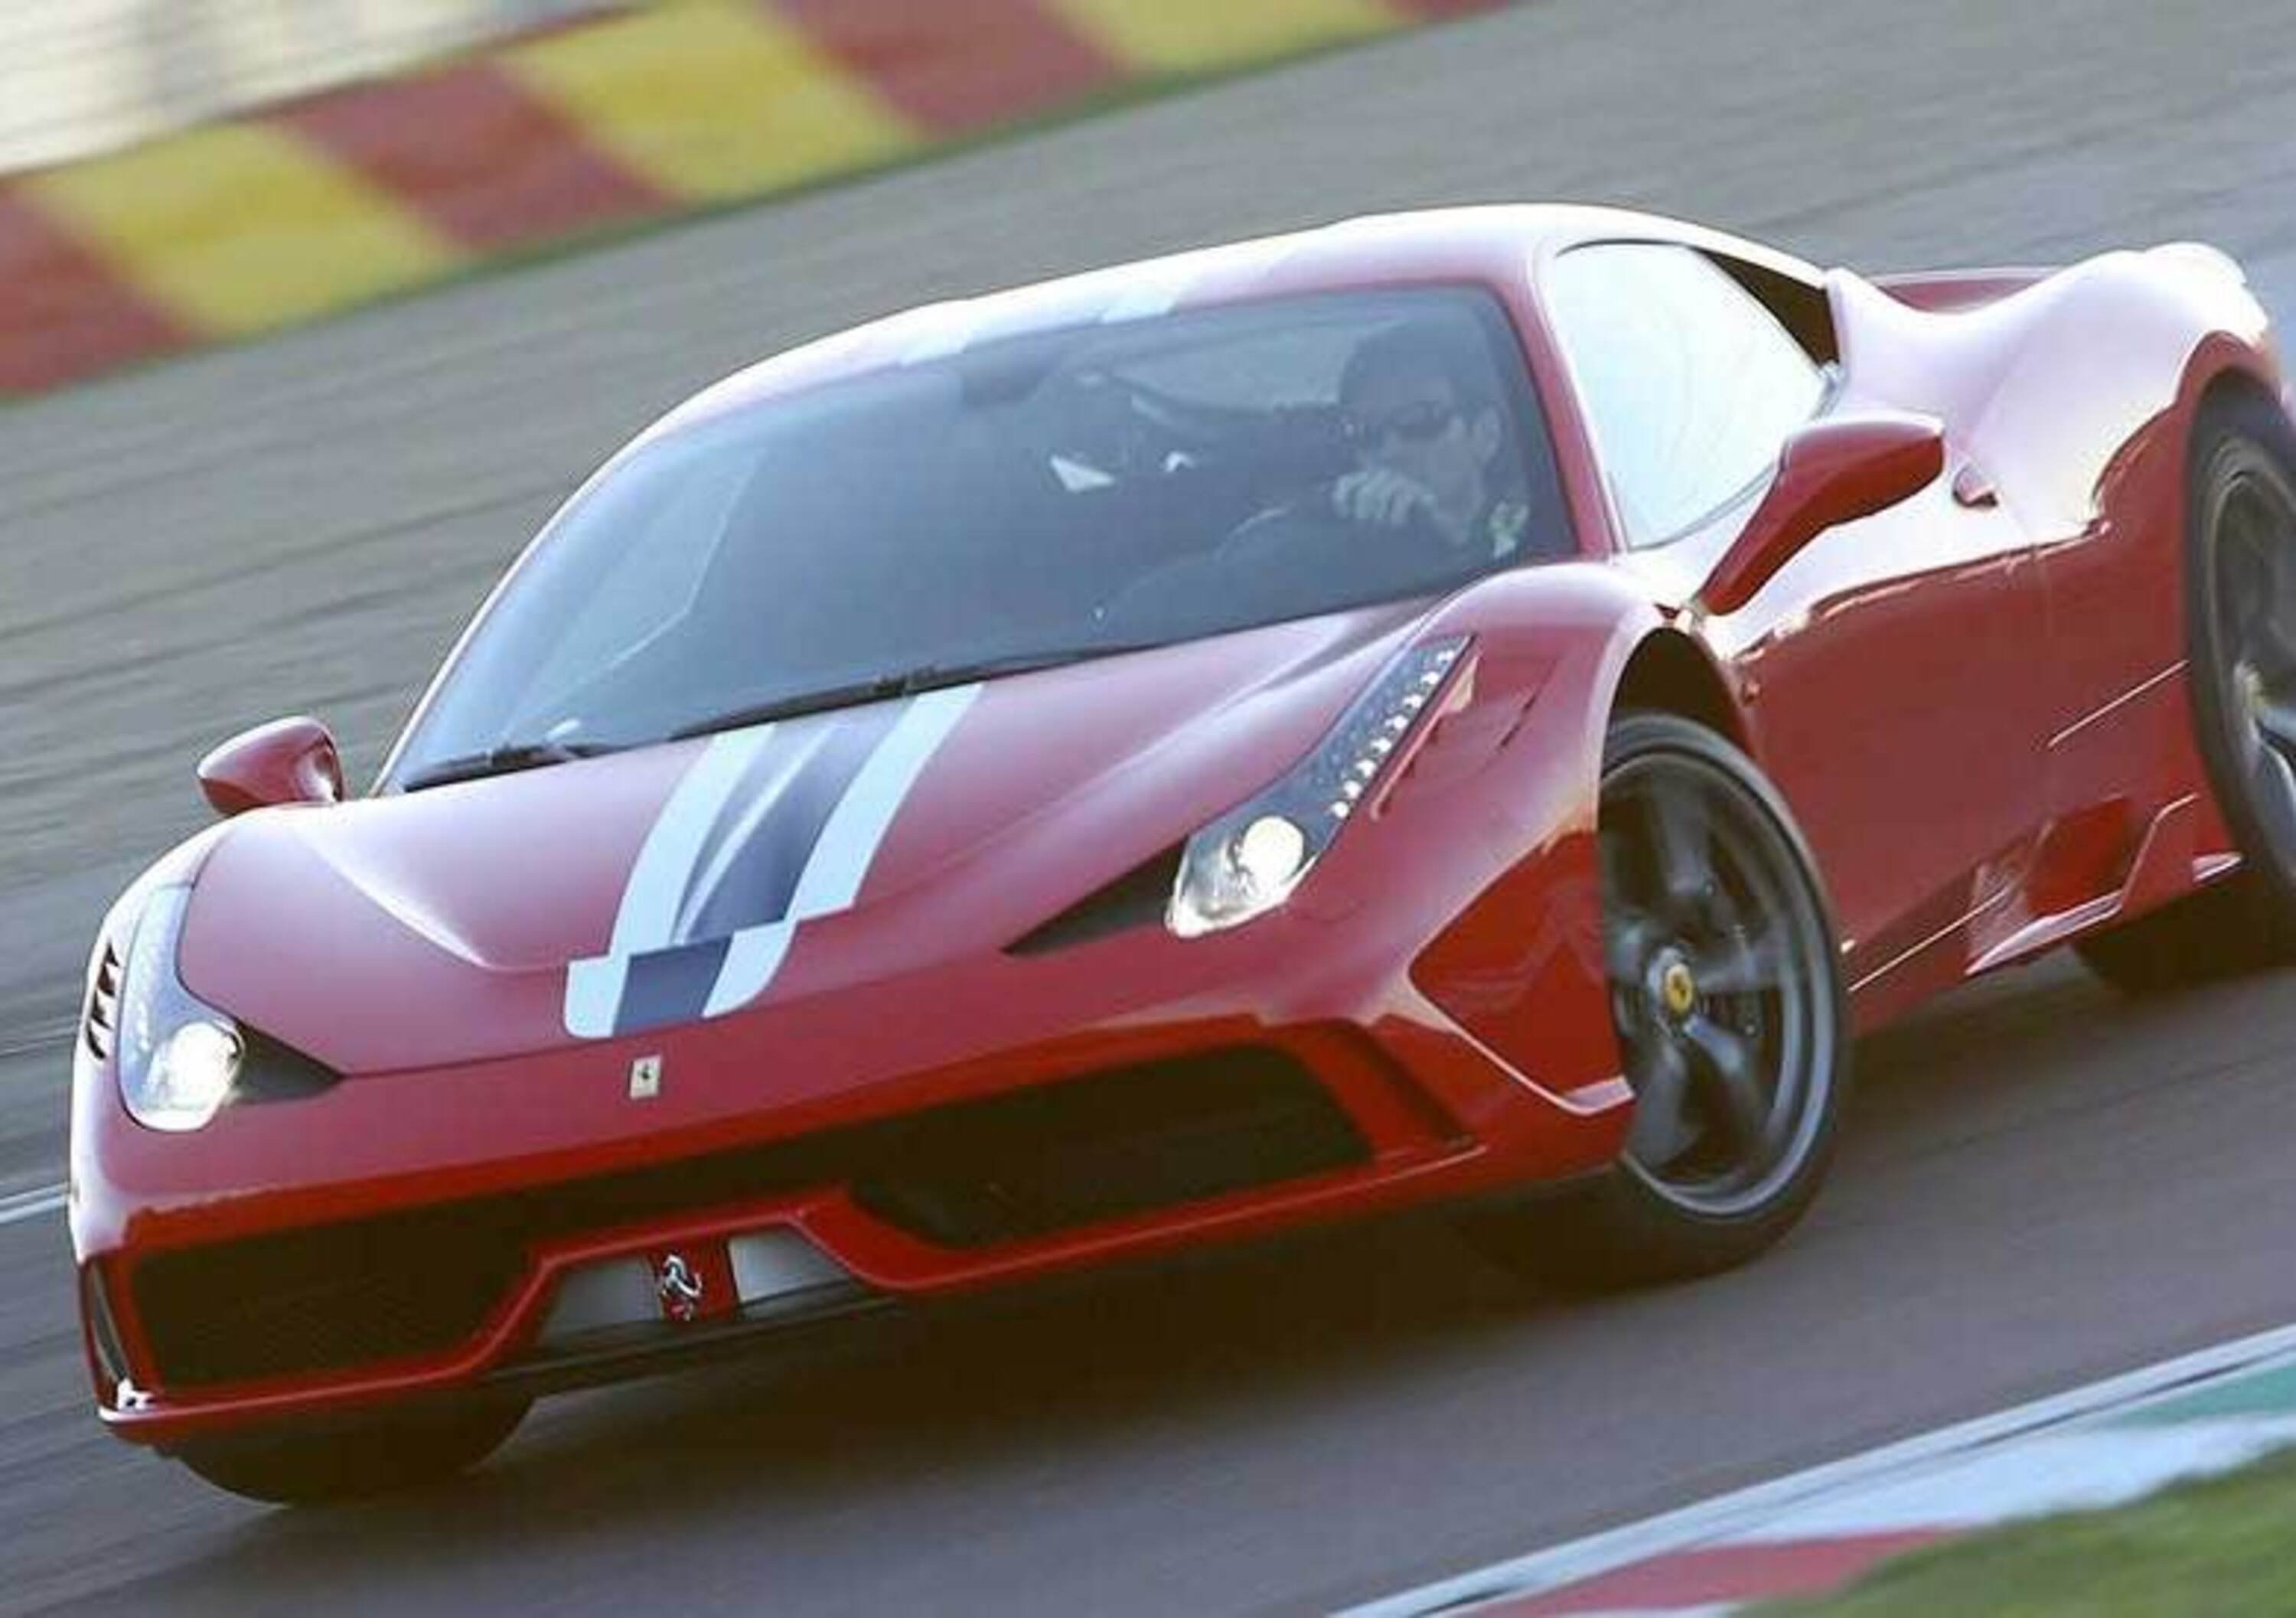 International Engine of the Year 2014: ecco tutti i vincitori, dal V8 Ferrari al tre cilindri Ford